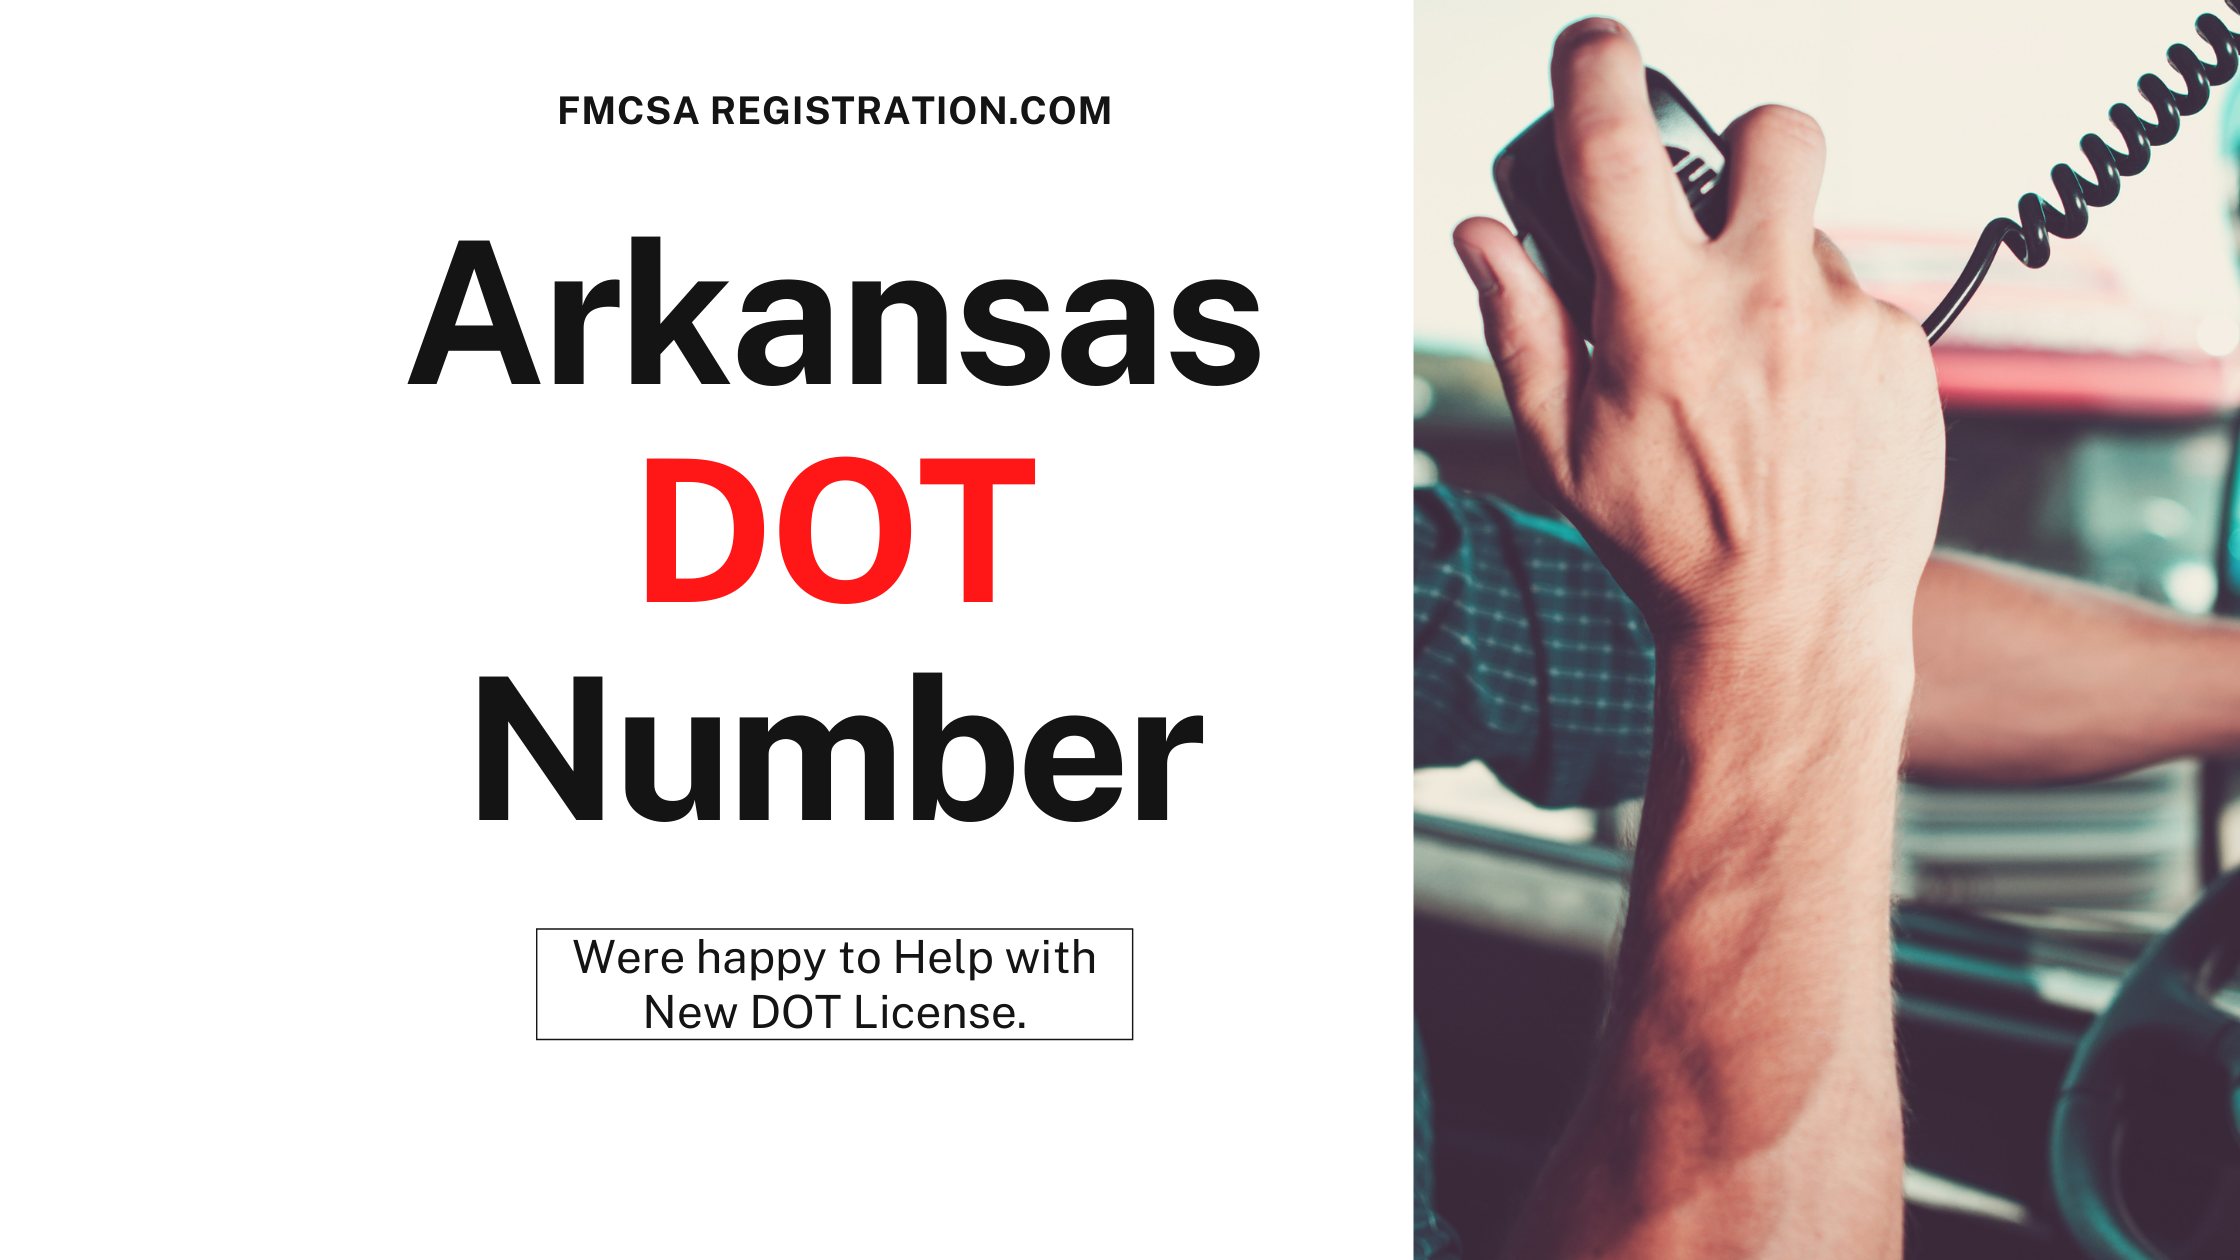 Arkansas DOT Number